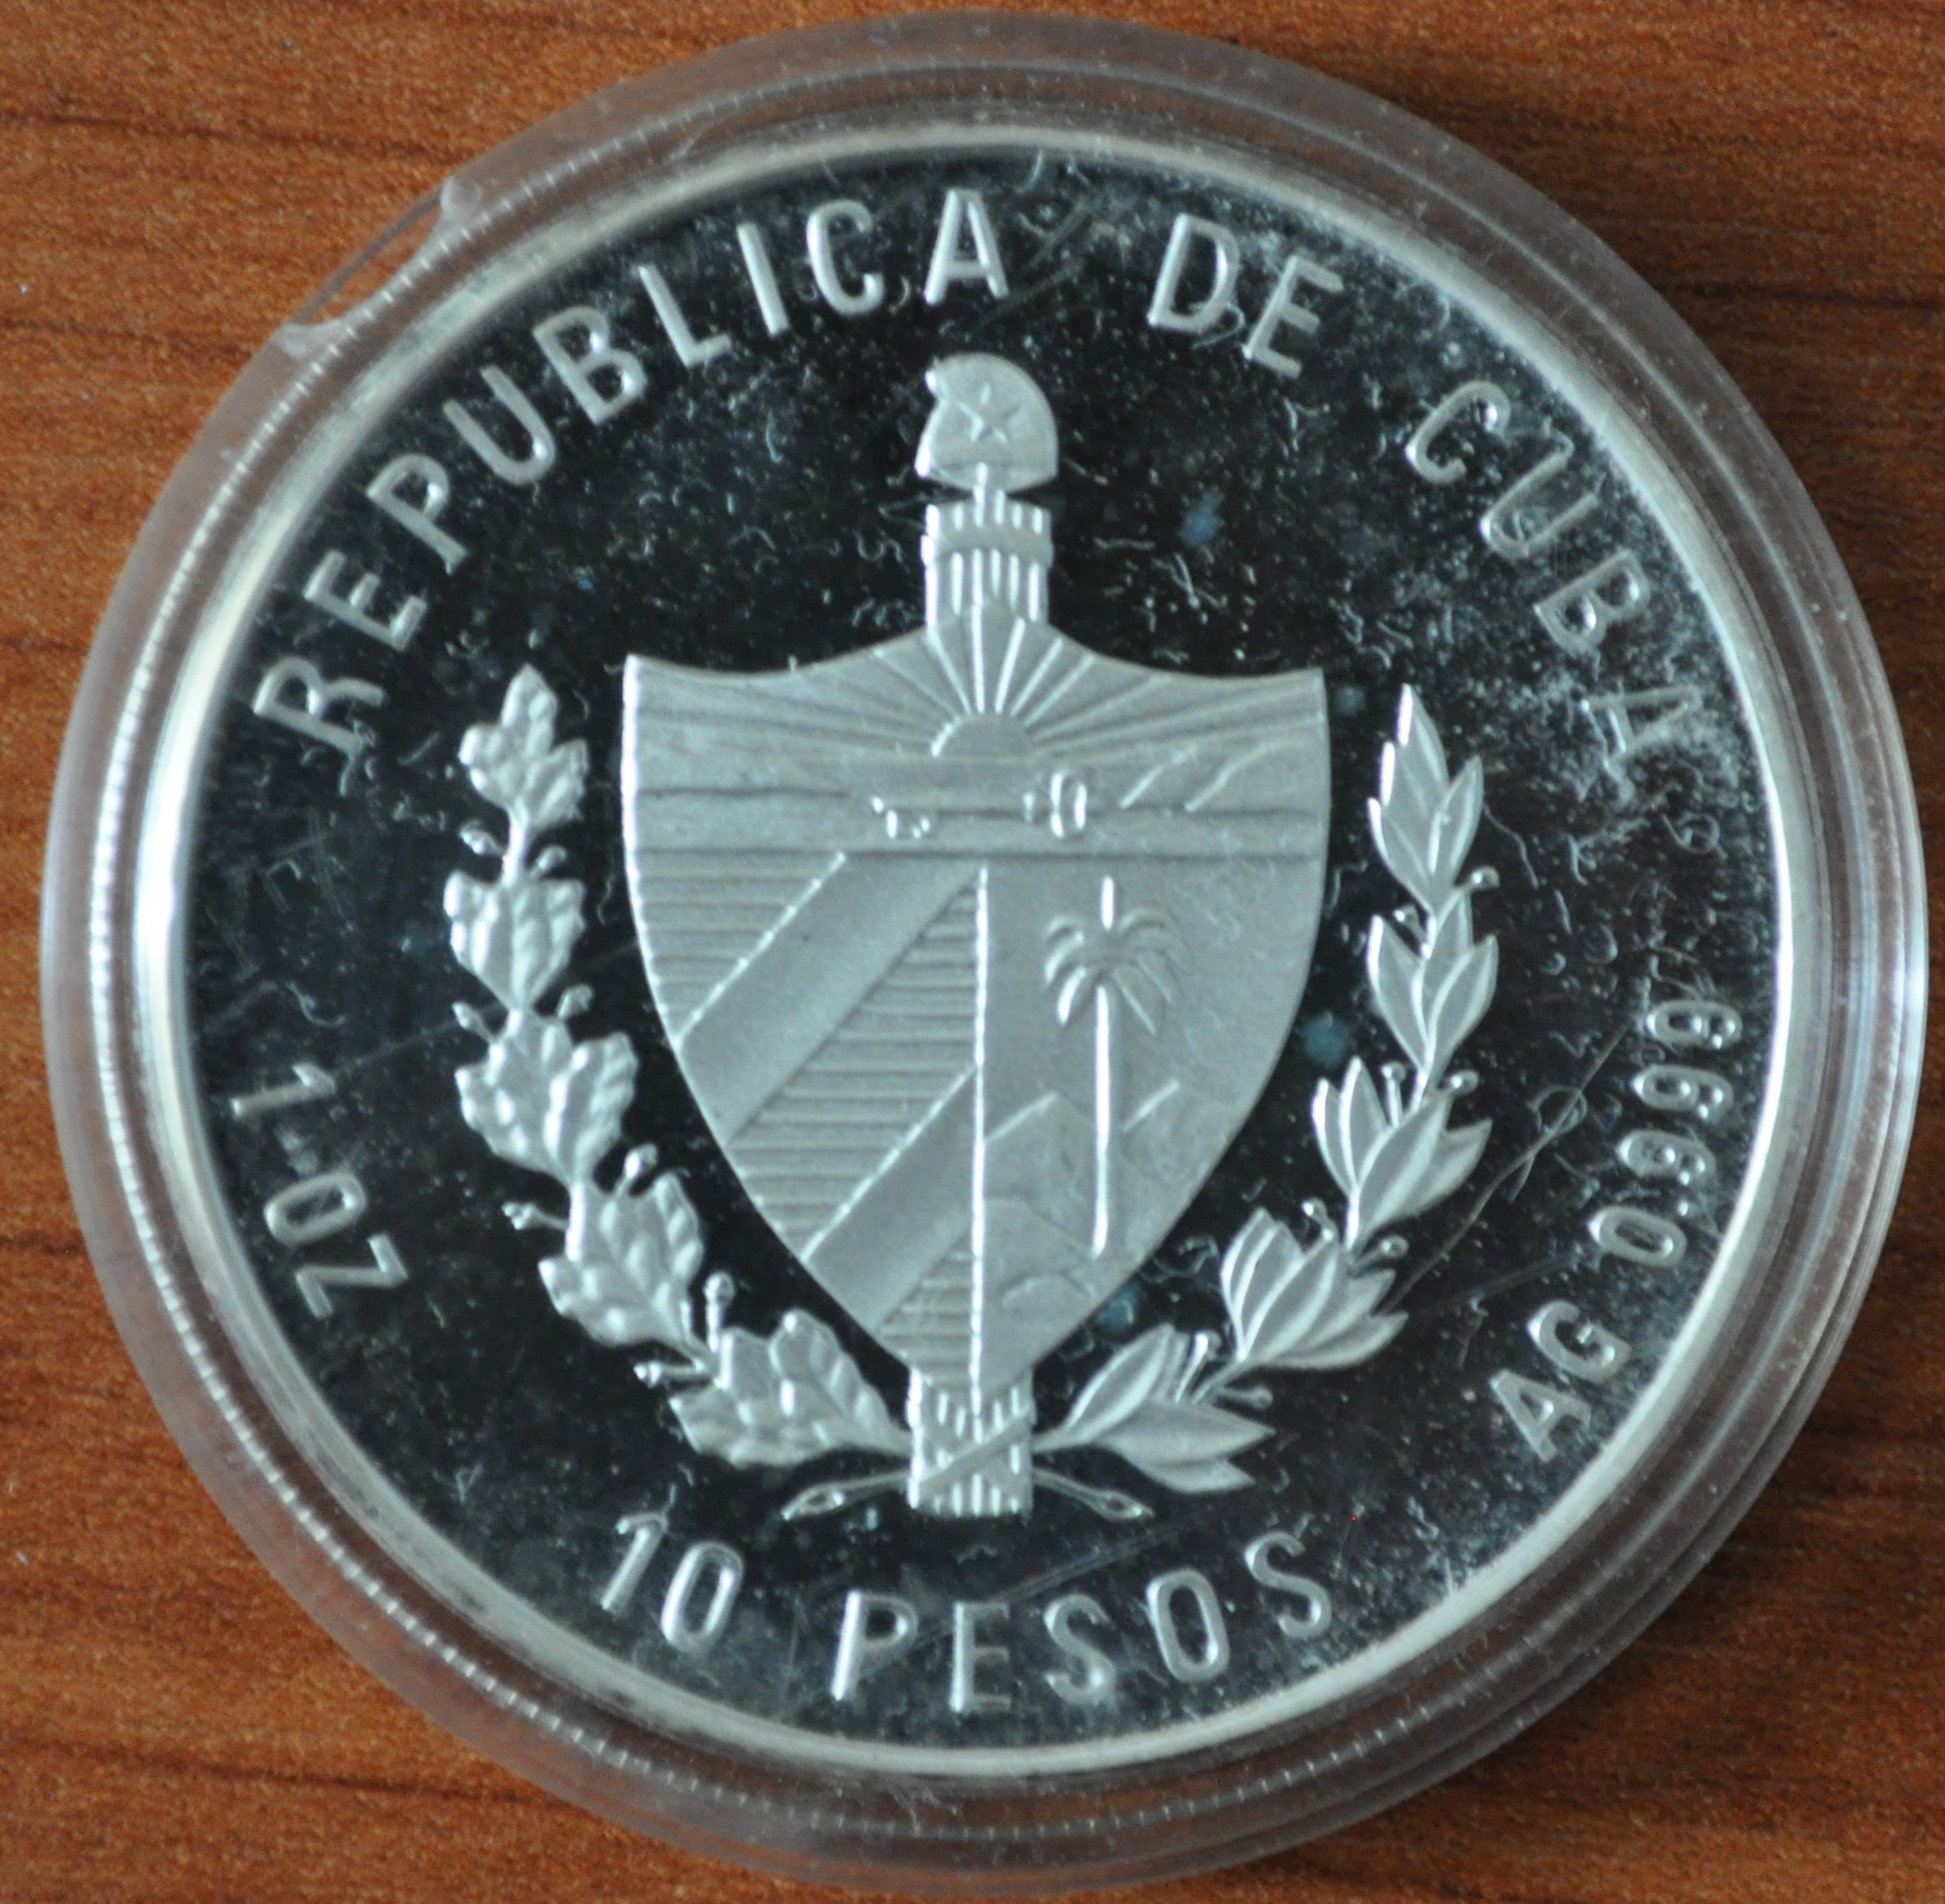 10 песо 2003. Чемпионат мира по футболу 2006